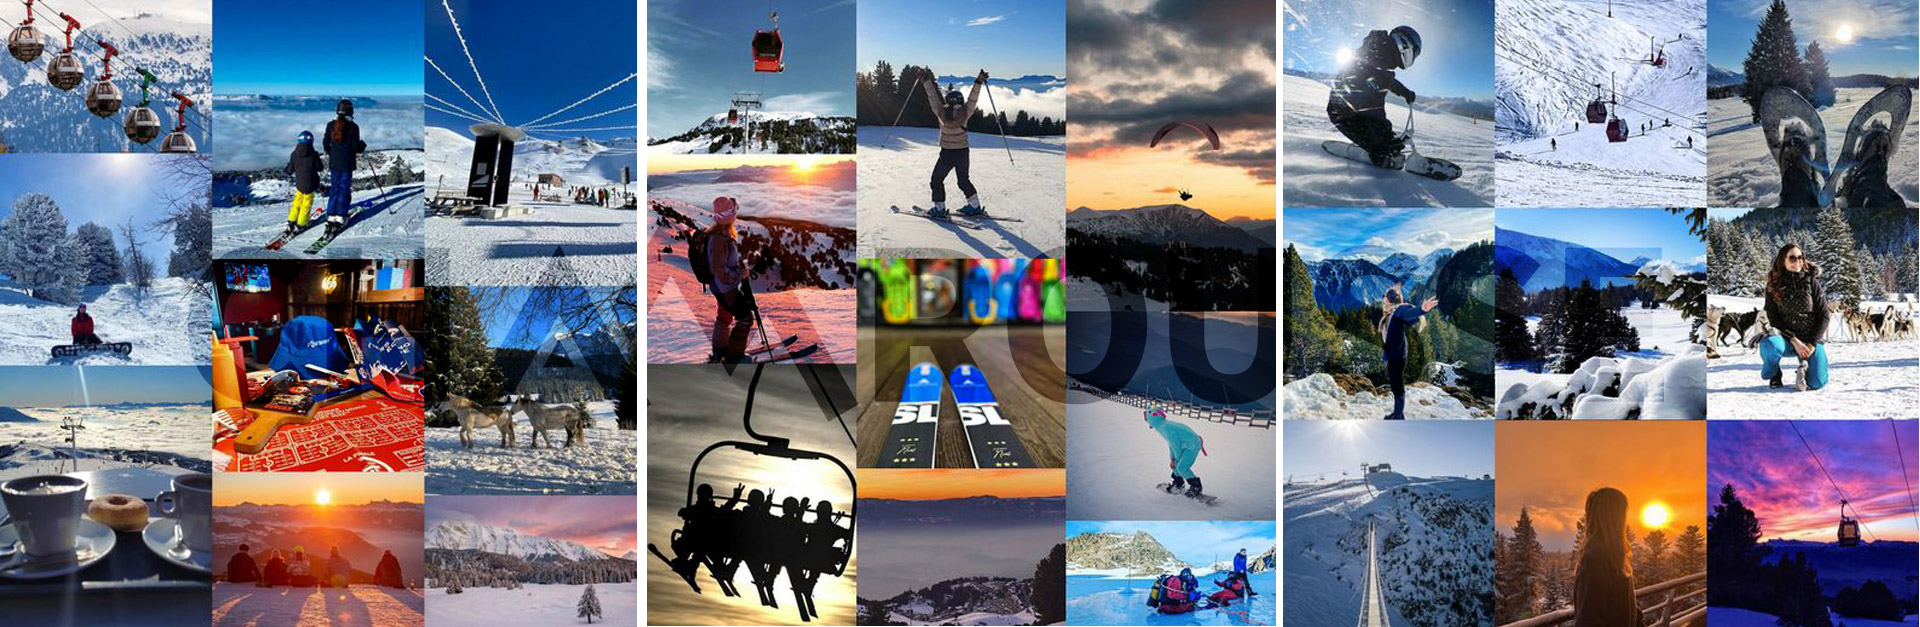 Chamrousse photo Instagram hiver 2022-2023 station ski montagne grenoble isère alpes france - © DR